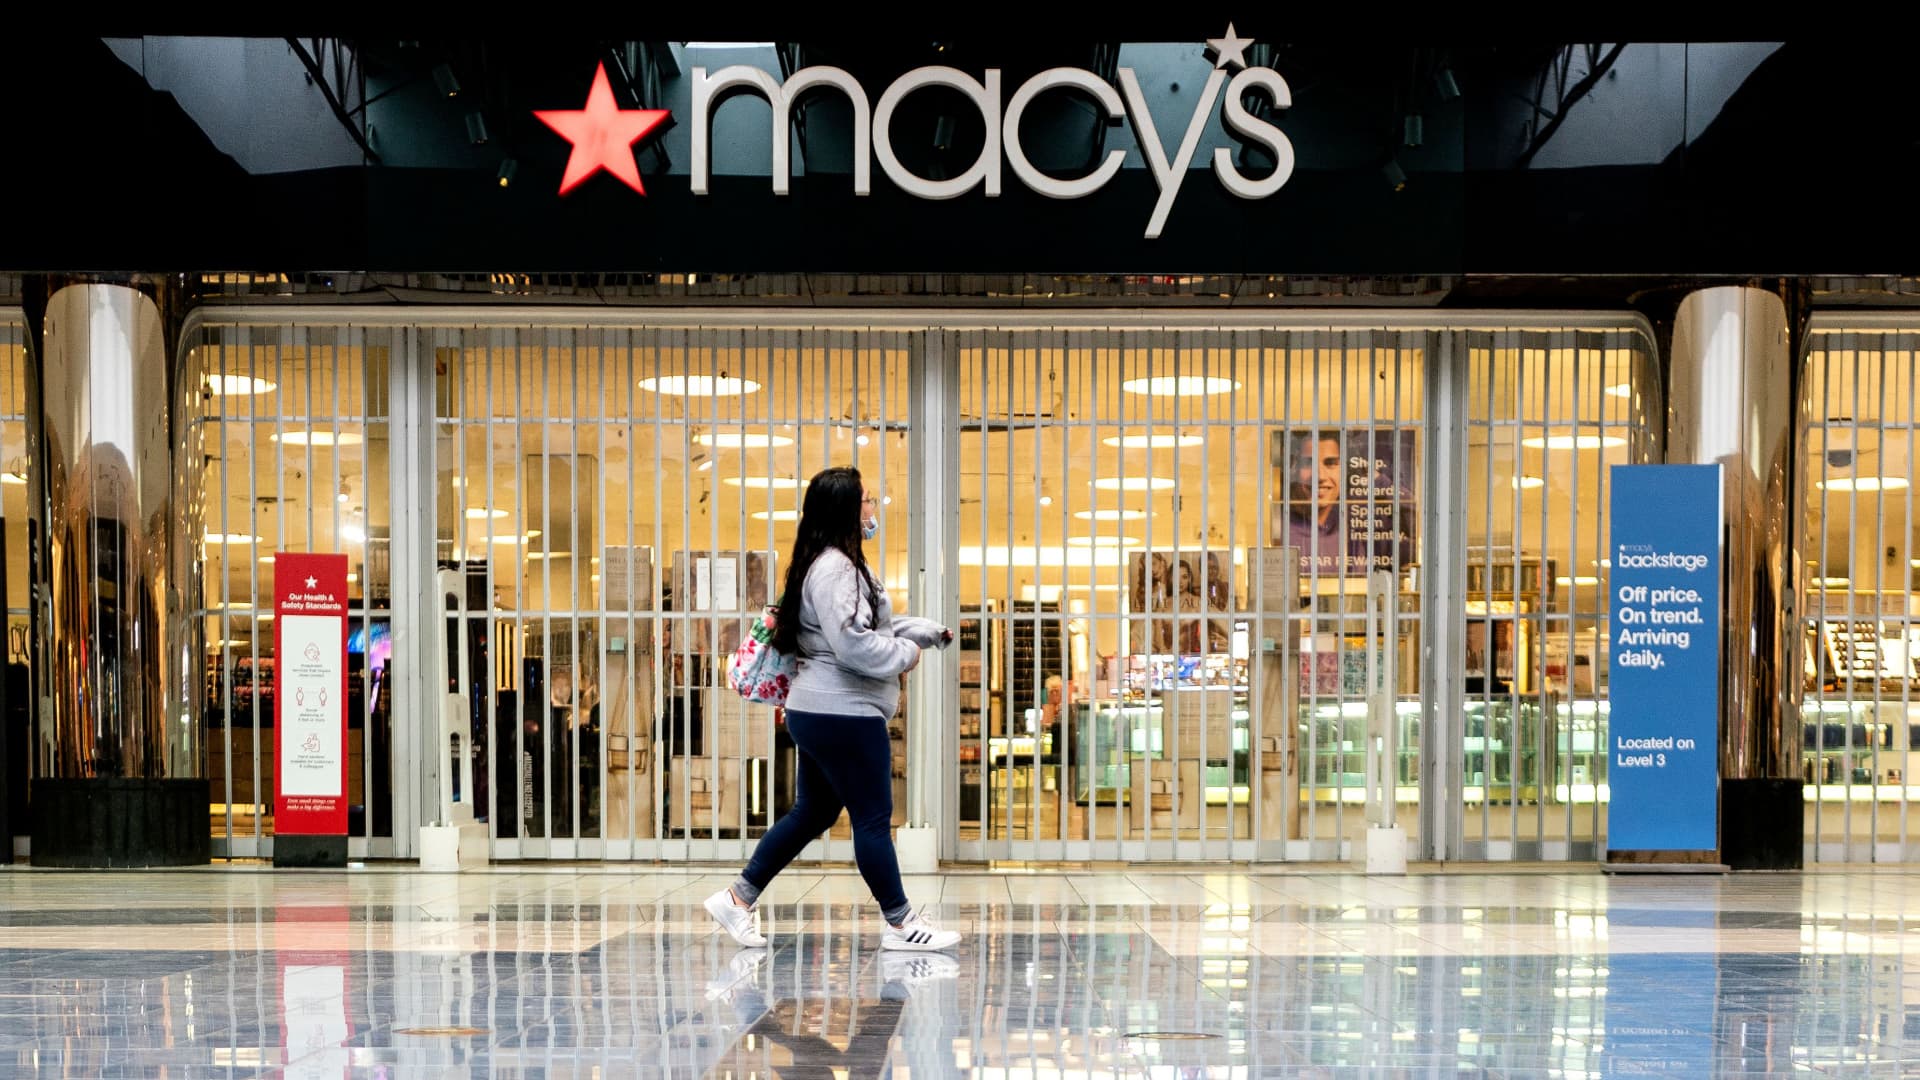 Macy’s stock surges as company raises 2022 profit outlook despite uncertain retail landscape